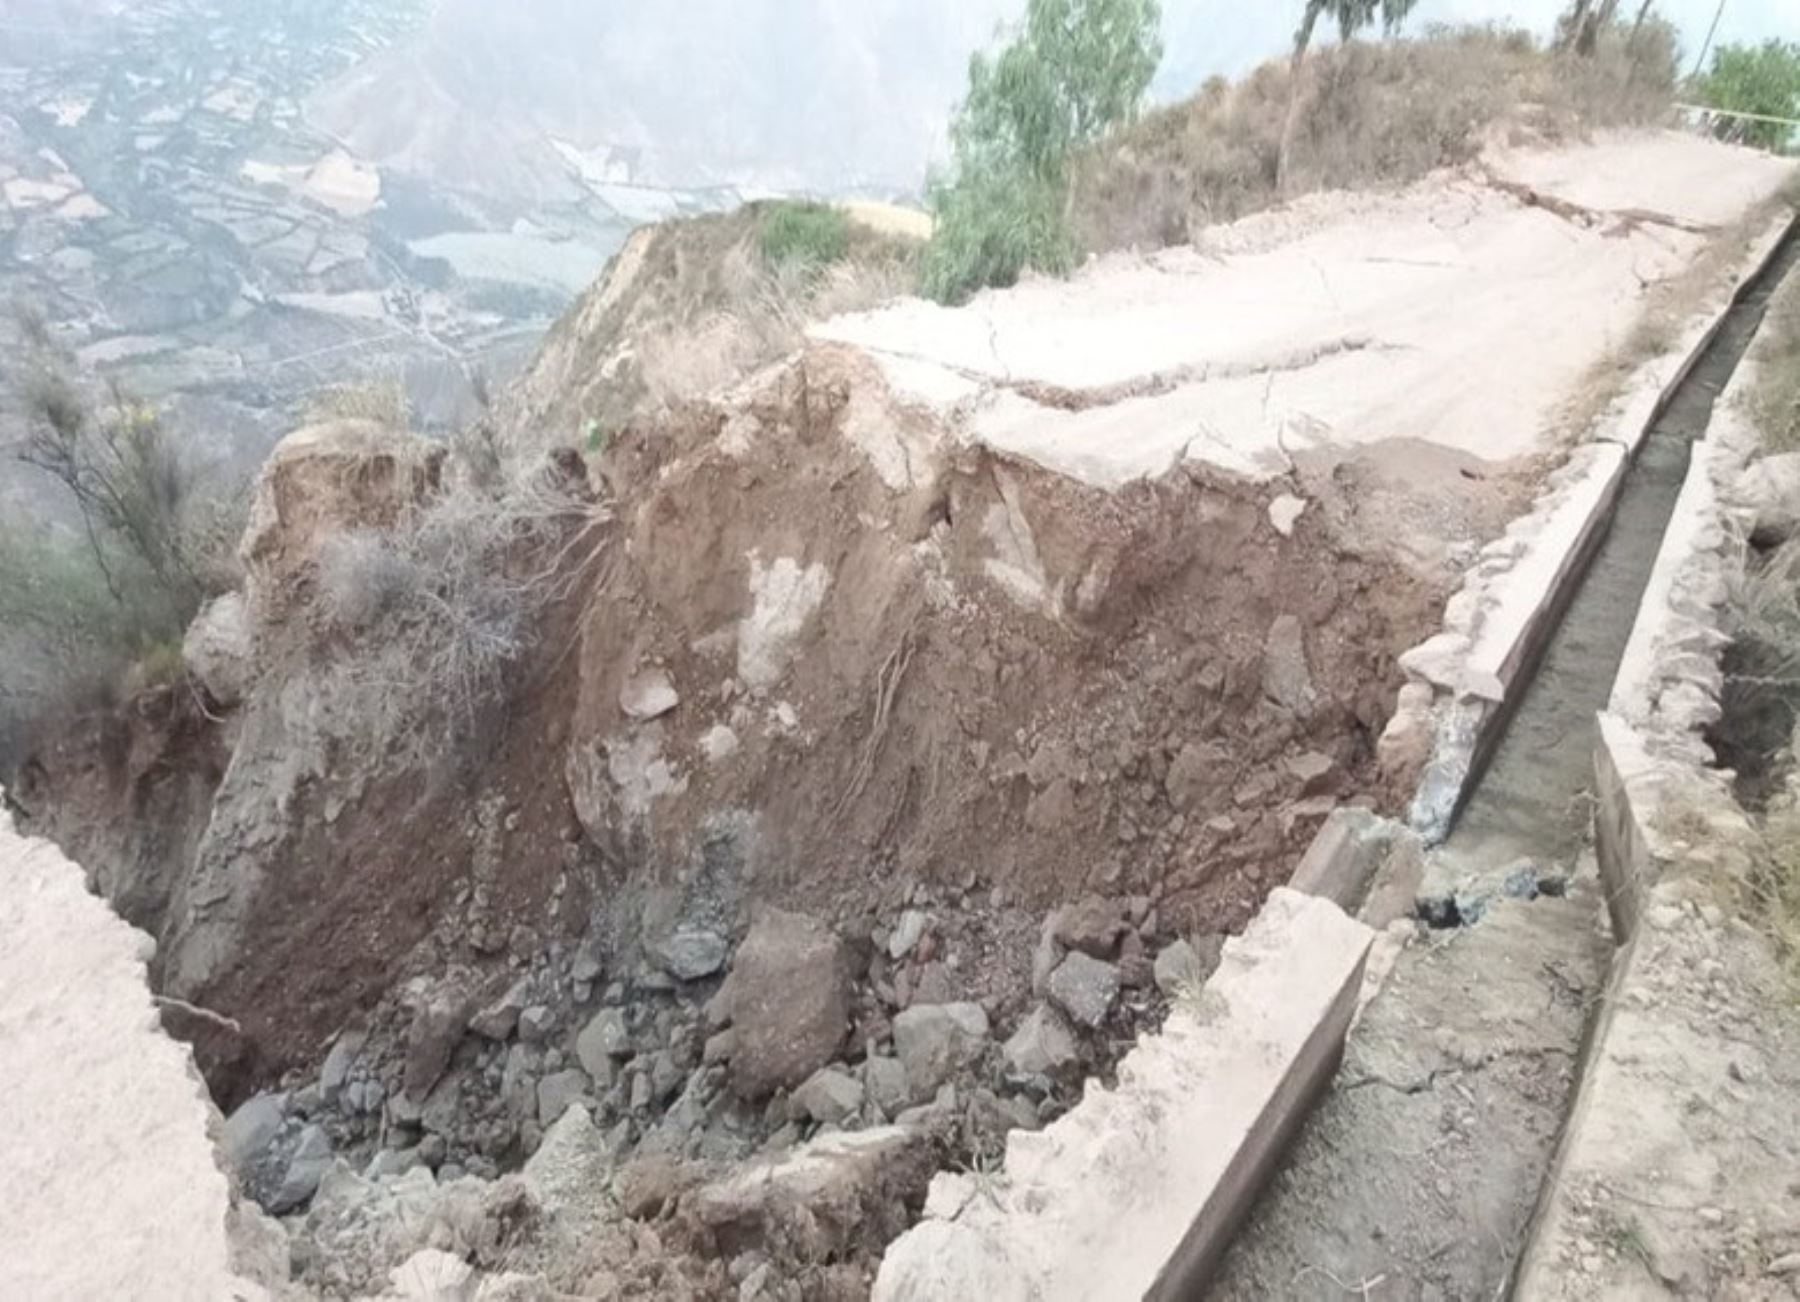 Deslizamiento y filtraciones provocaron el colapso de una vía vecinal en la provincia de Huaylas, región Áncash. ANDINA/Difusión